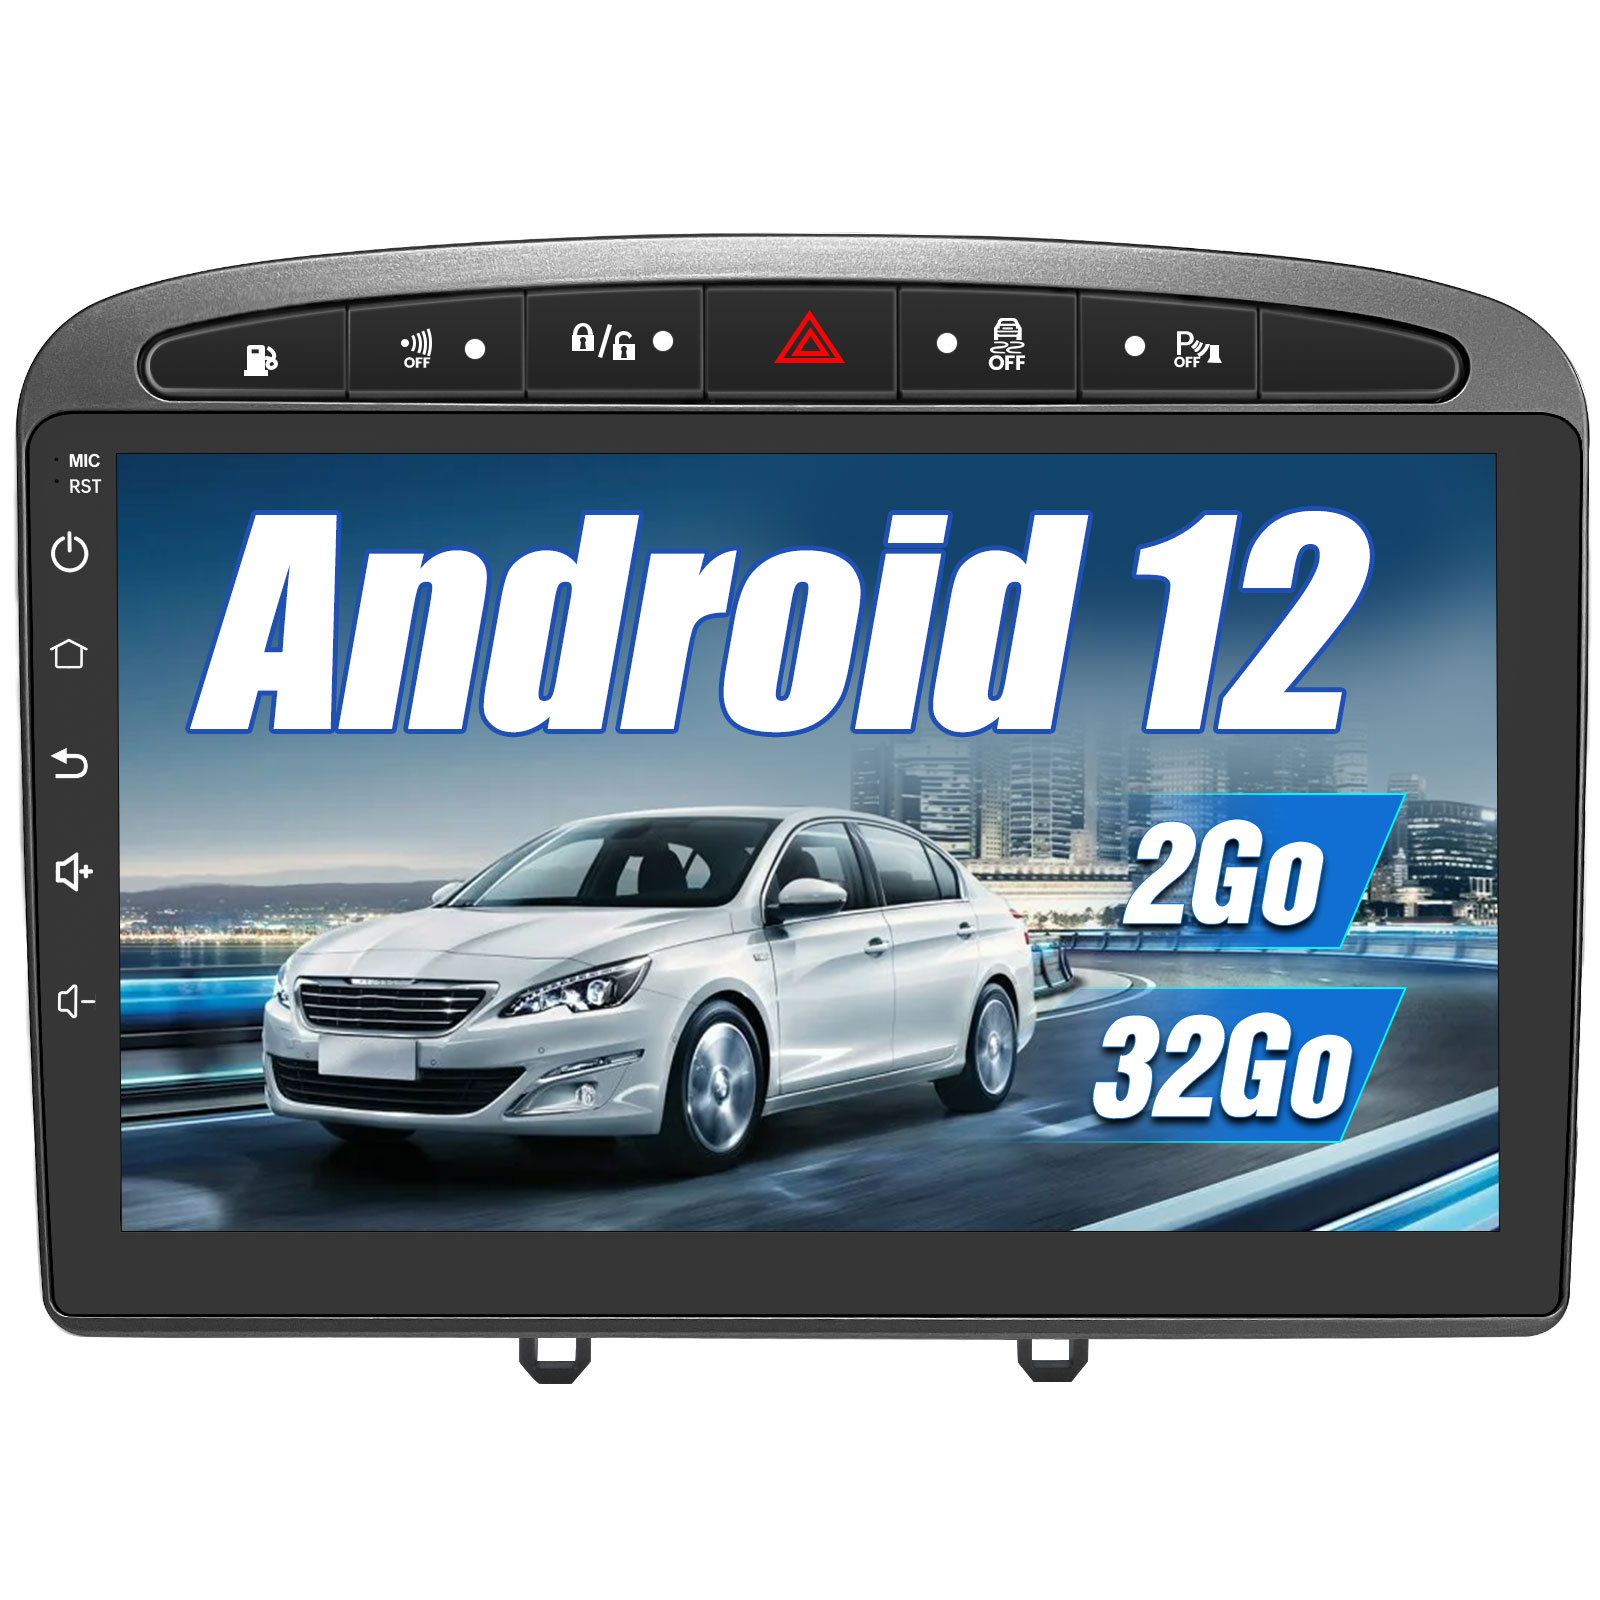 € 199.00 - AWESAFE Autoradio Android 12 pour Peugeot 308/408(2007-2013), Autoradio 9 Pouces Écran Tactile【2Go + 32Go】 avec GPS Navigation WiFi  Mirrorlink Commande au Volant/Bluetooth/Aide au Stationnement-Gris -  fr.awesafeshop.com